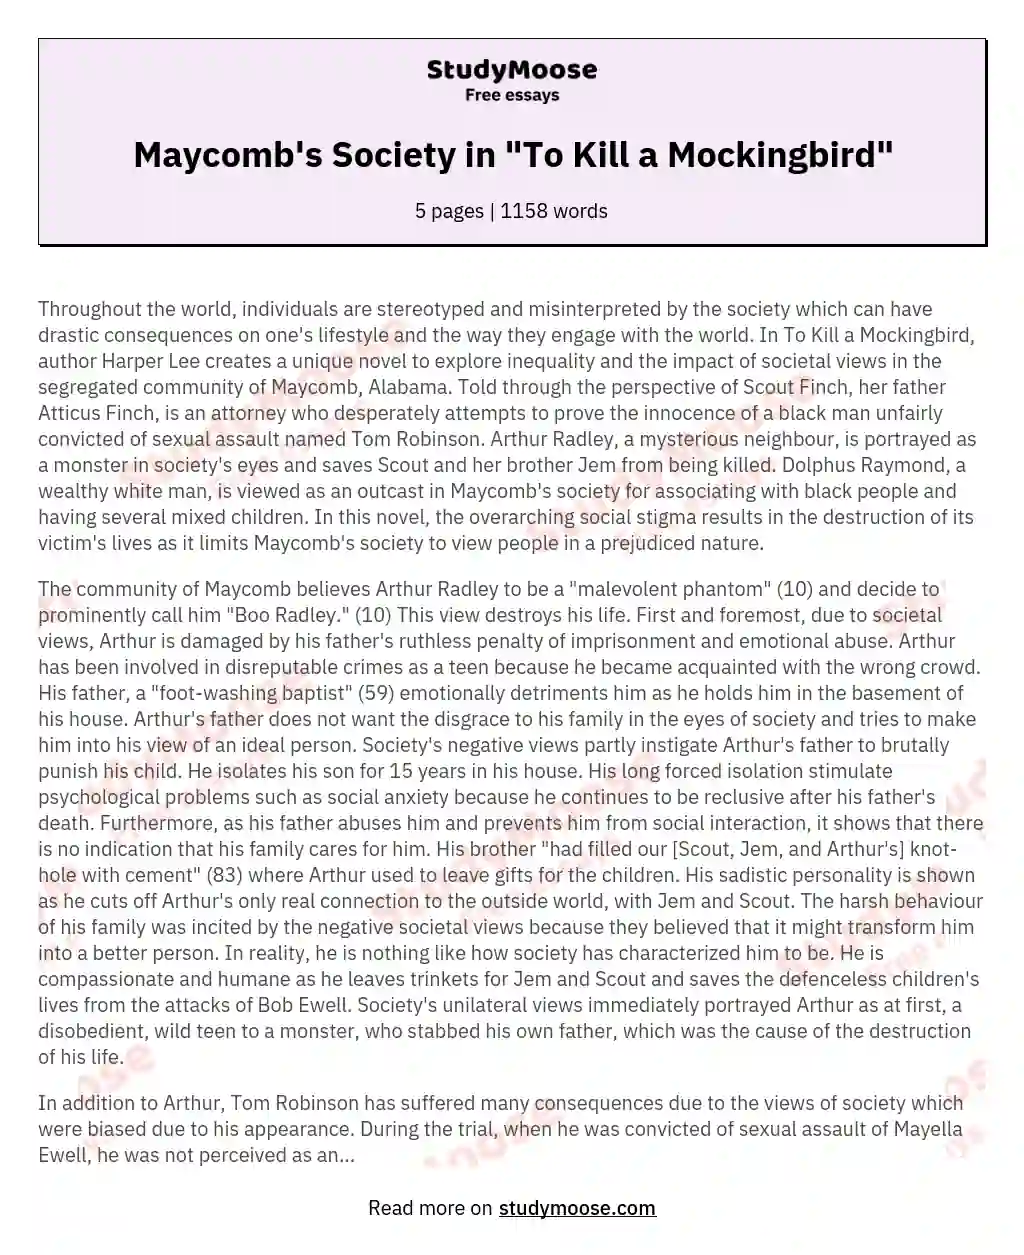 Maycomb's Society in "To Kill a Mockingbird" essay